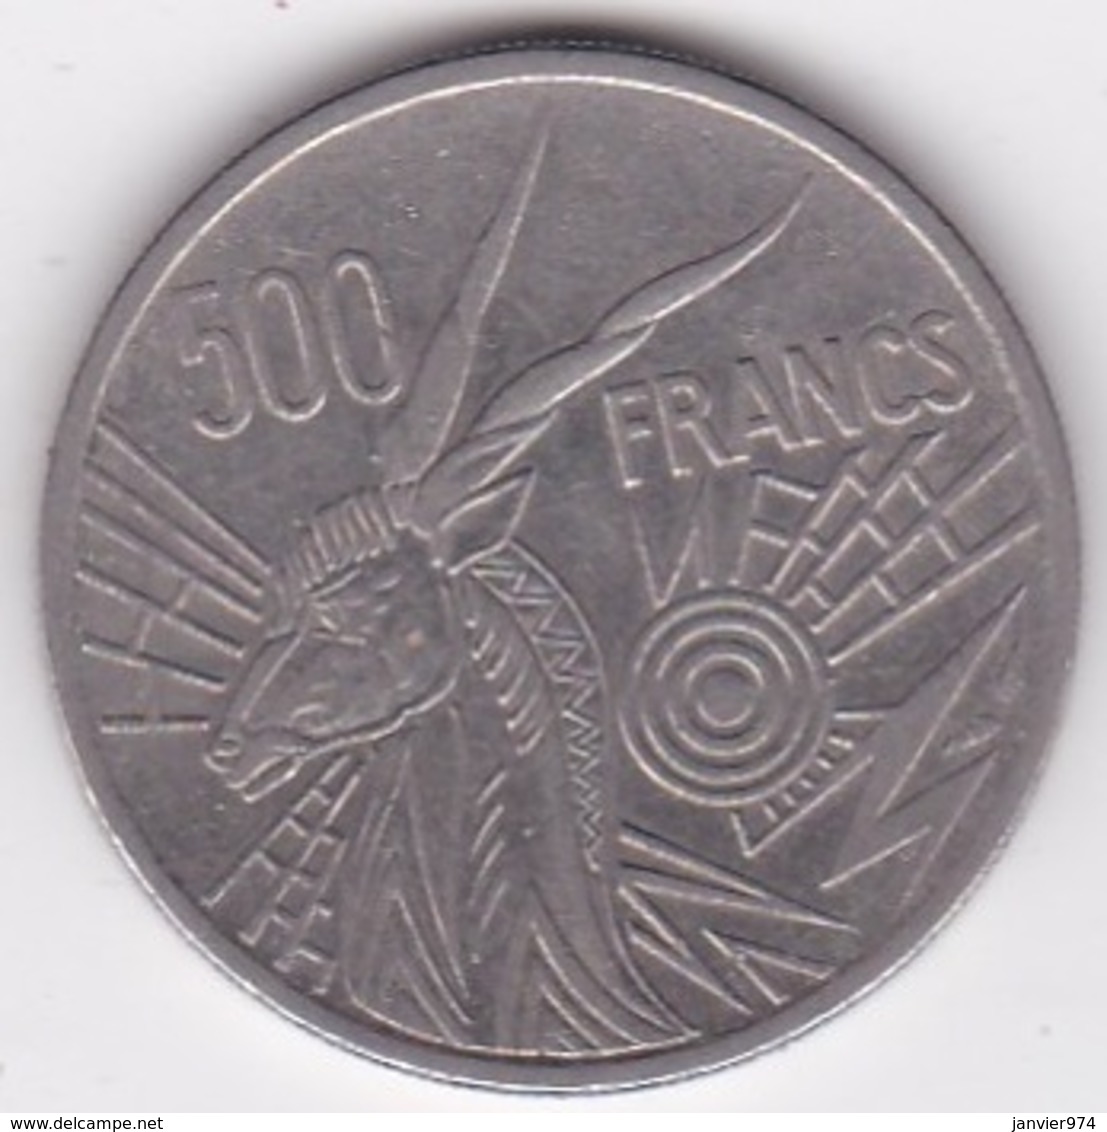 Banque Des Etats De L'Afrique Centrale. 500 Francs 1976 B Republique Centrafricaine - Central African Republic